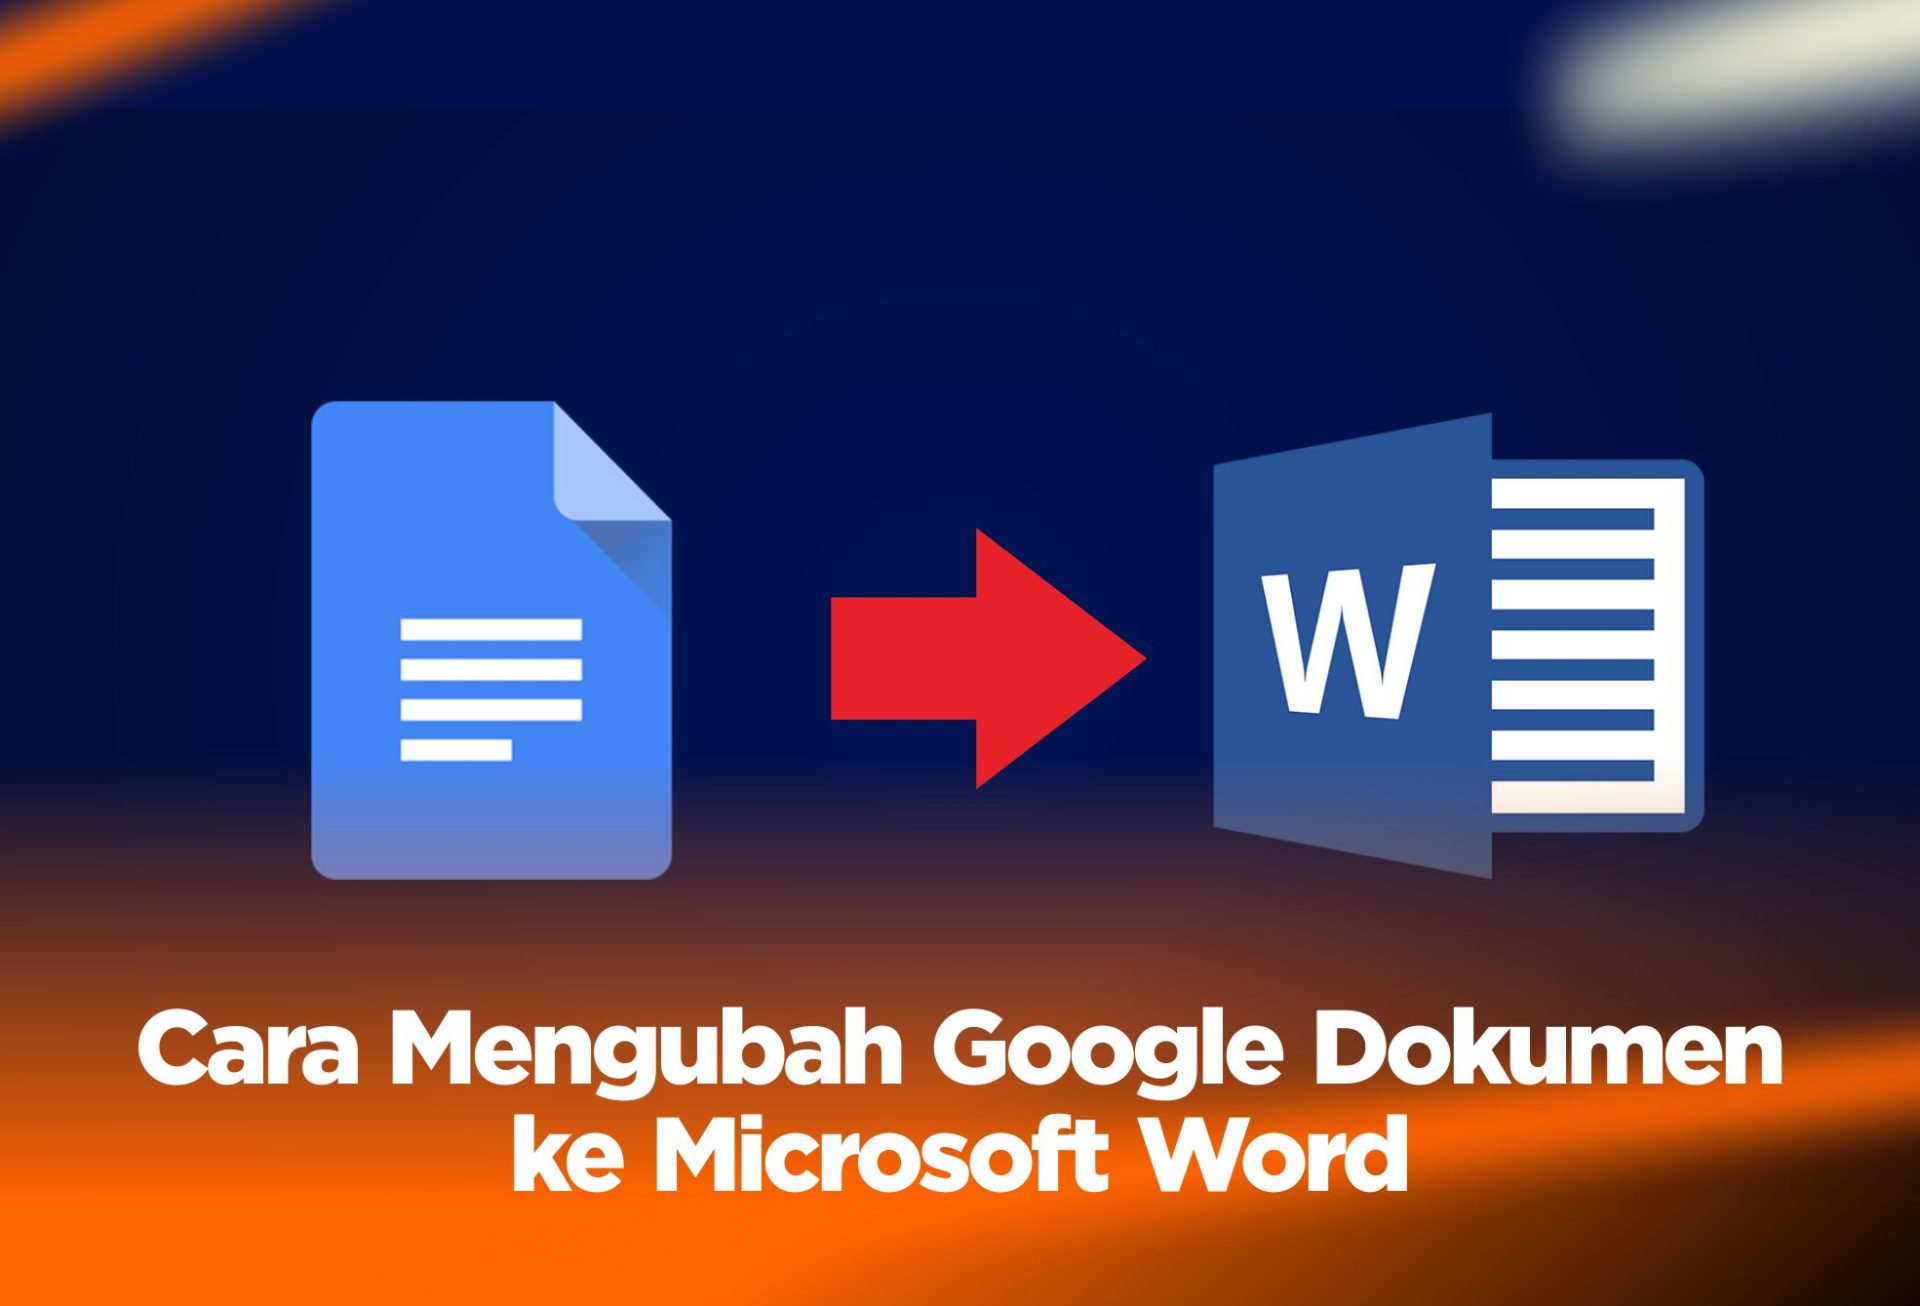 Cara Mengubah Google Dokumen ke Microsoft Word